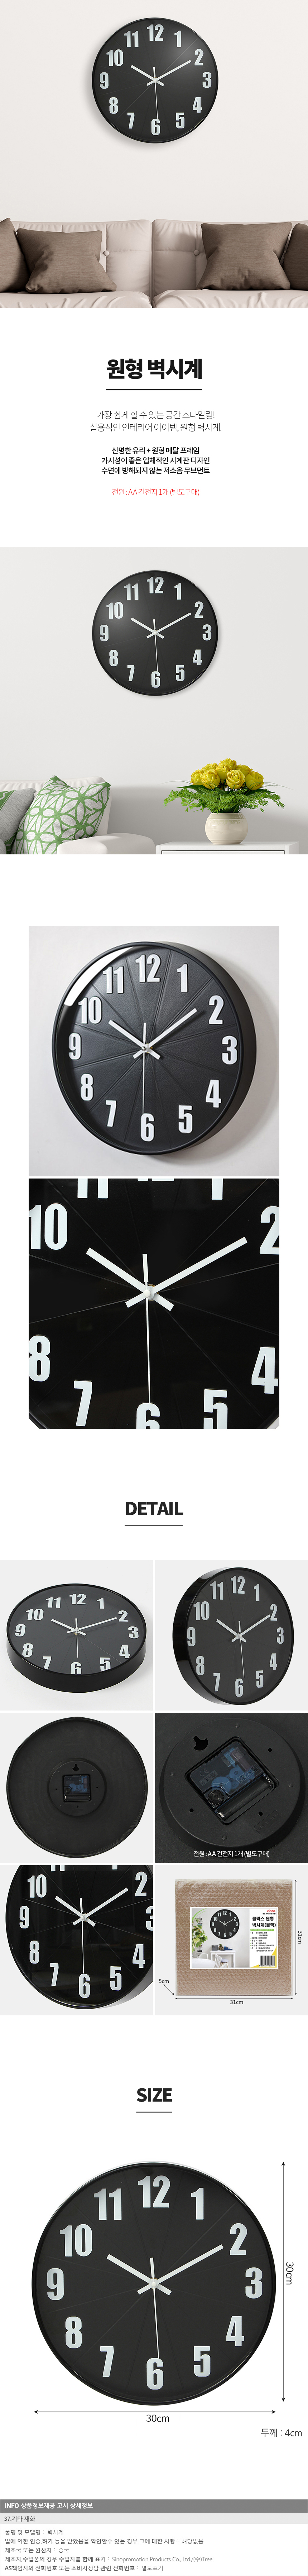 원형 벽시계 30cm 학원 판촉 인쇄 벽걸이시계